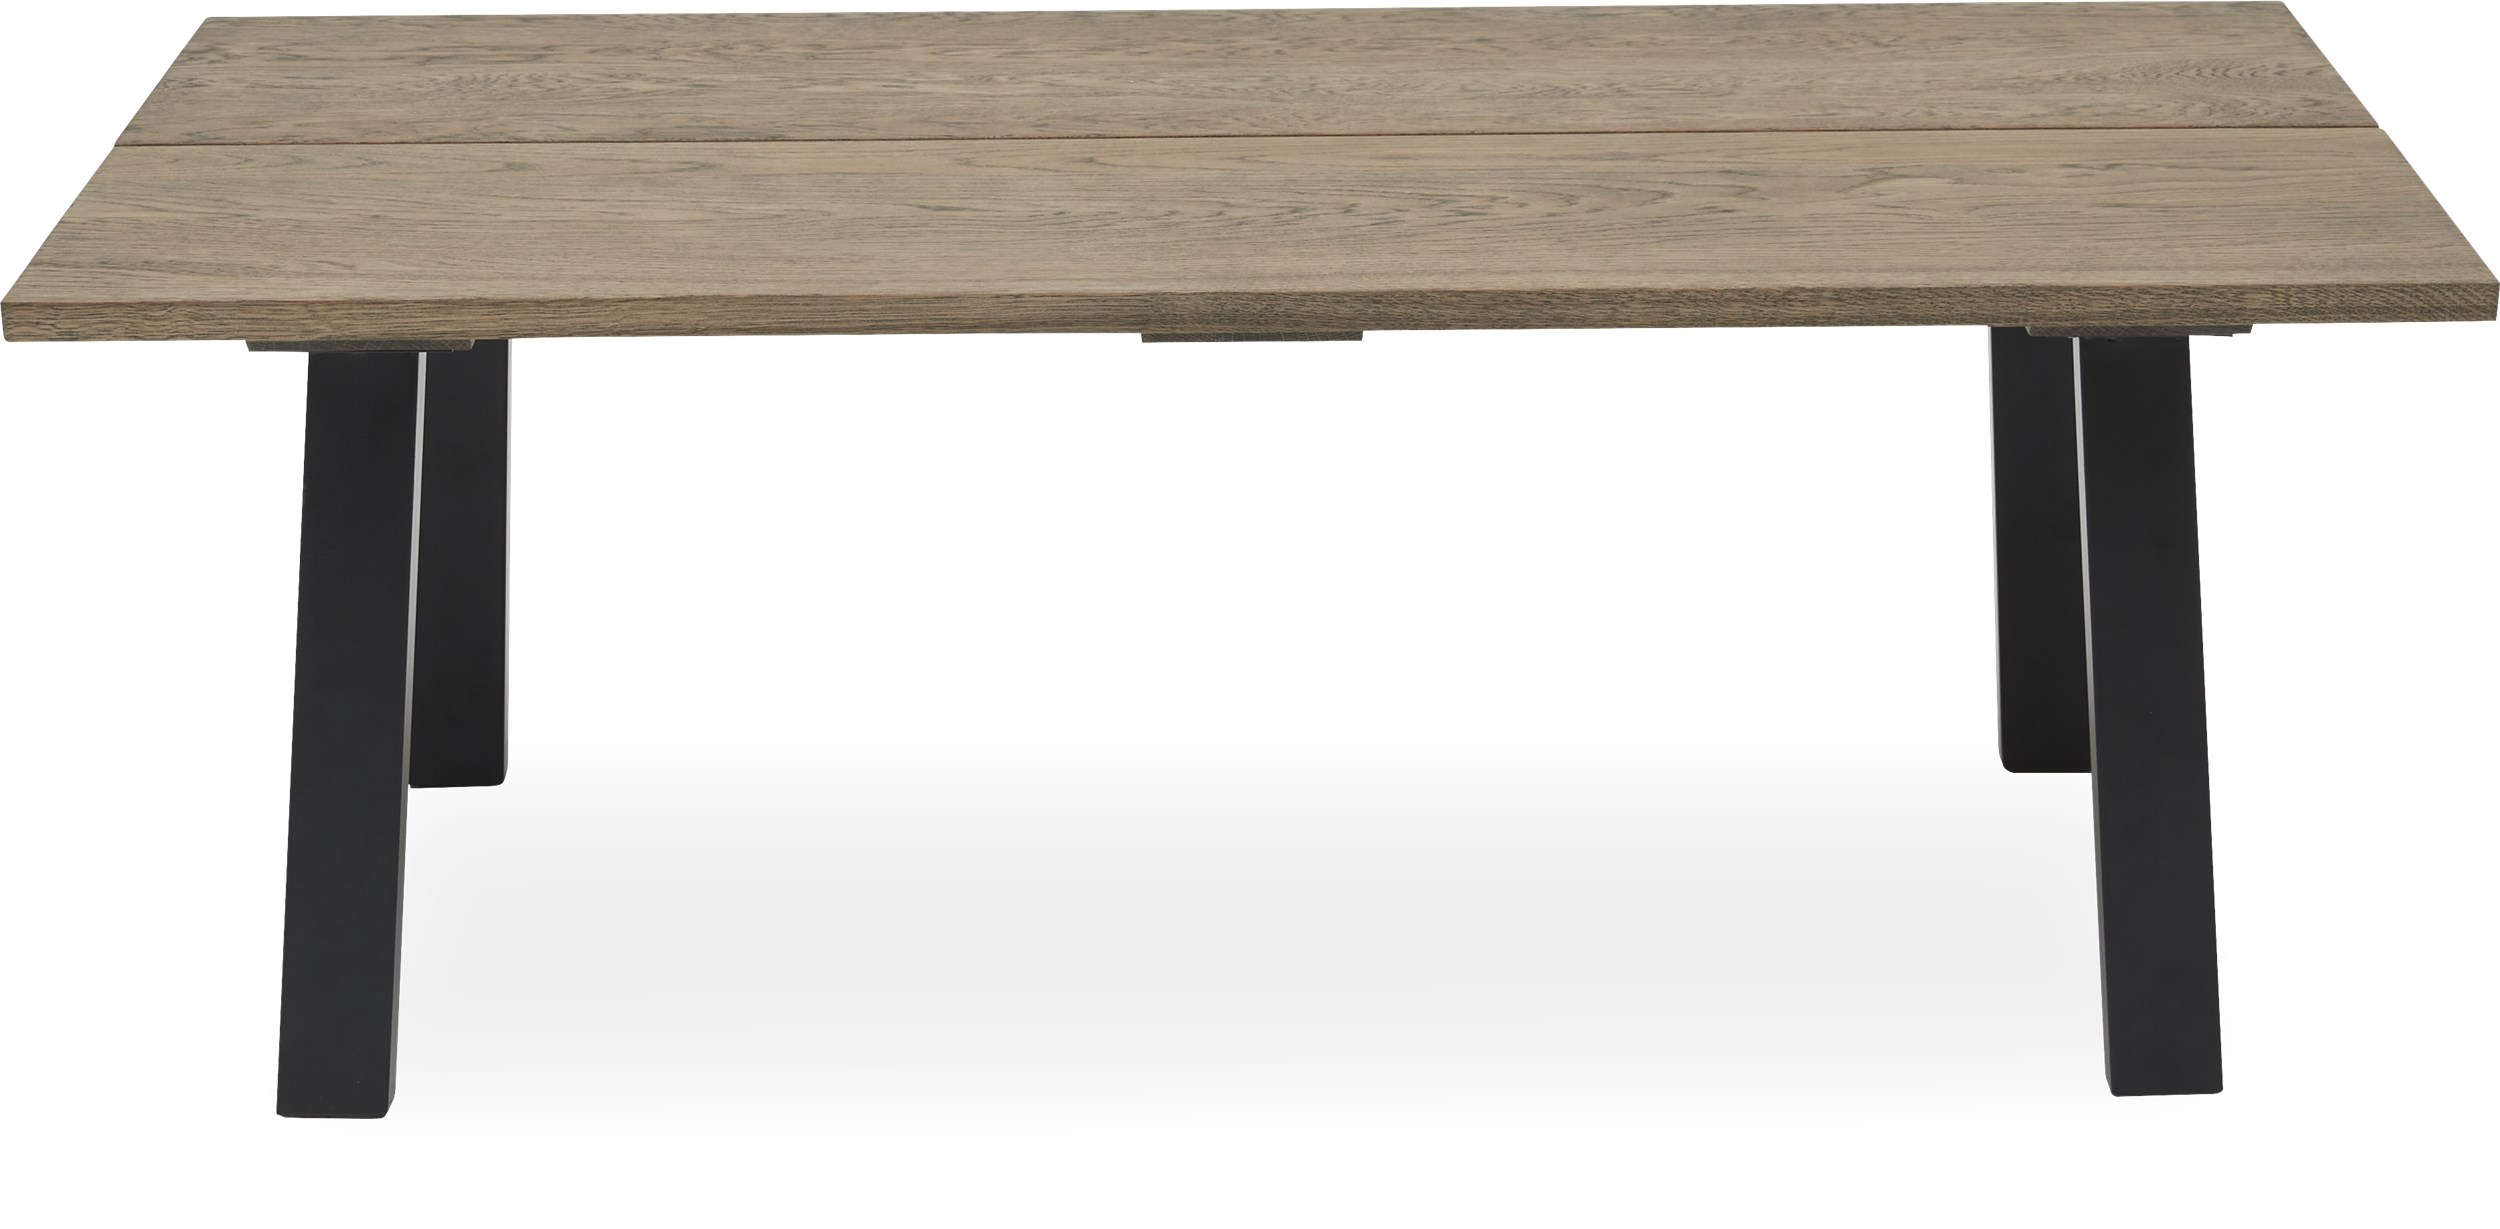 Real Sofabord 130 x 45 x 70 cm - massiv mørk gråolieret eg, 2 planker med skrå kant og ben i sort pulverlakeret metal